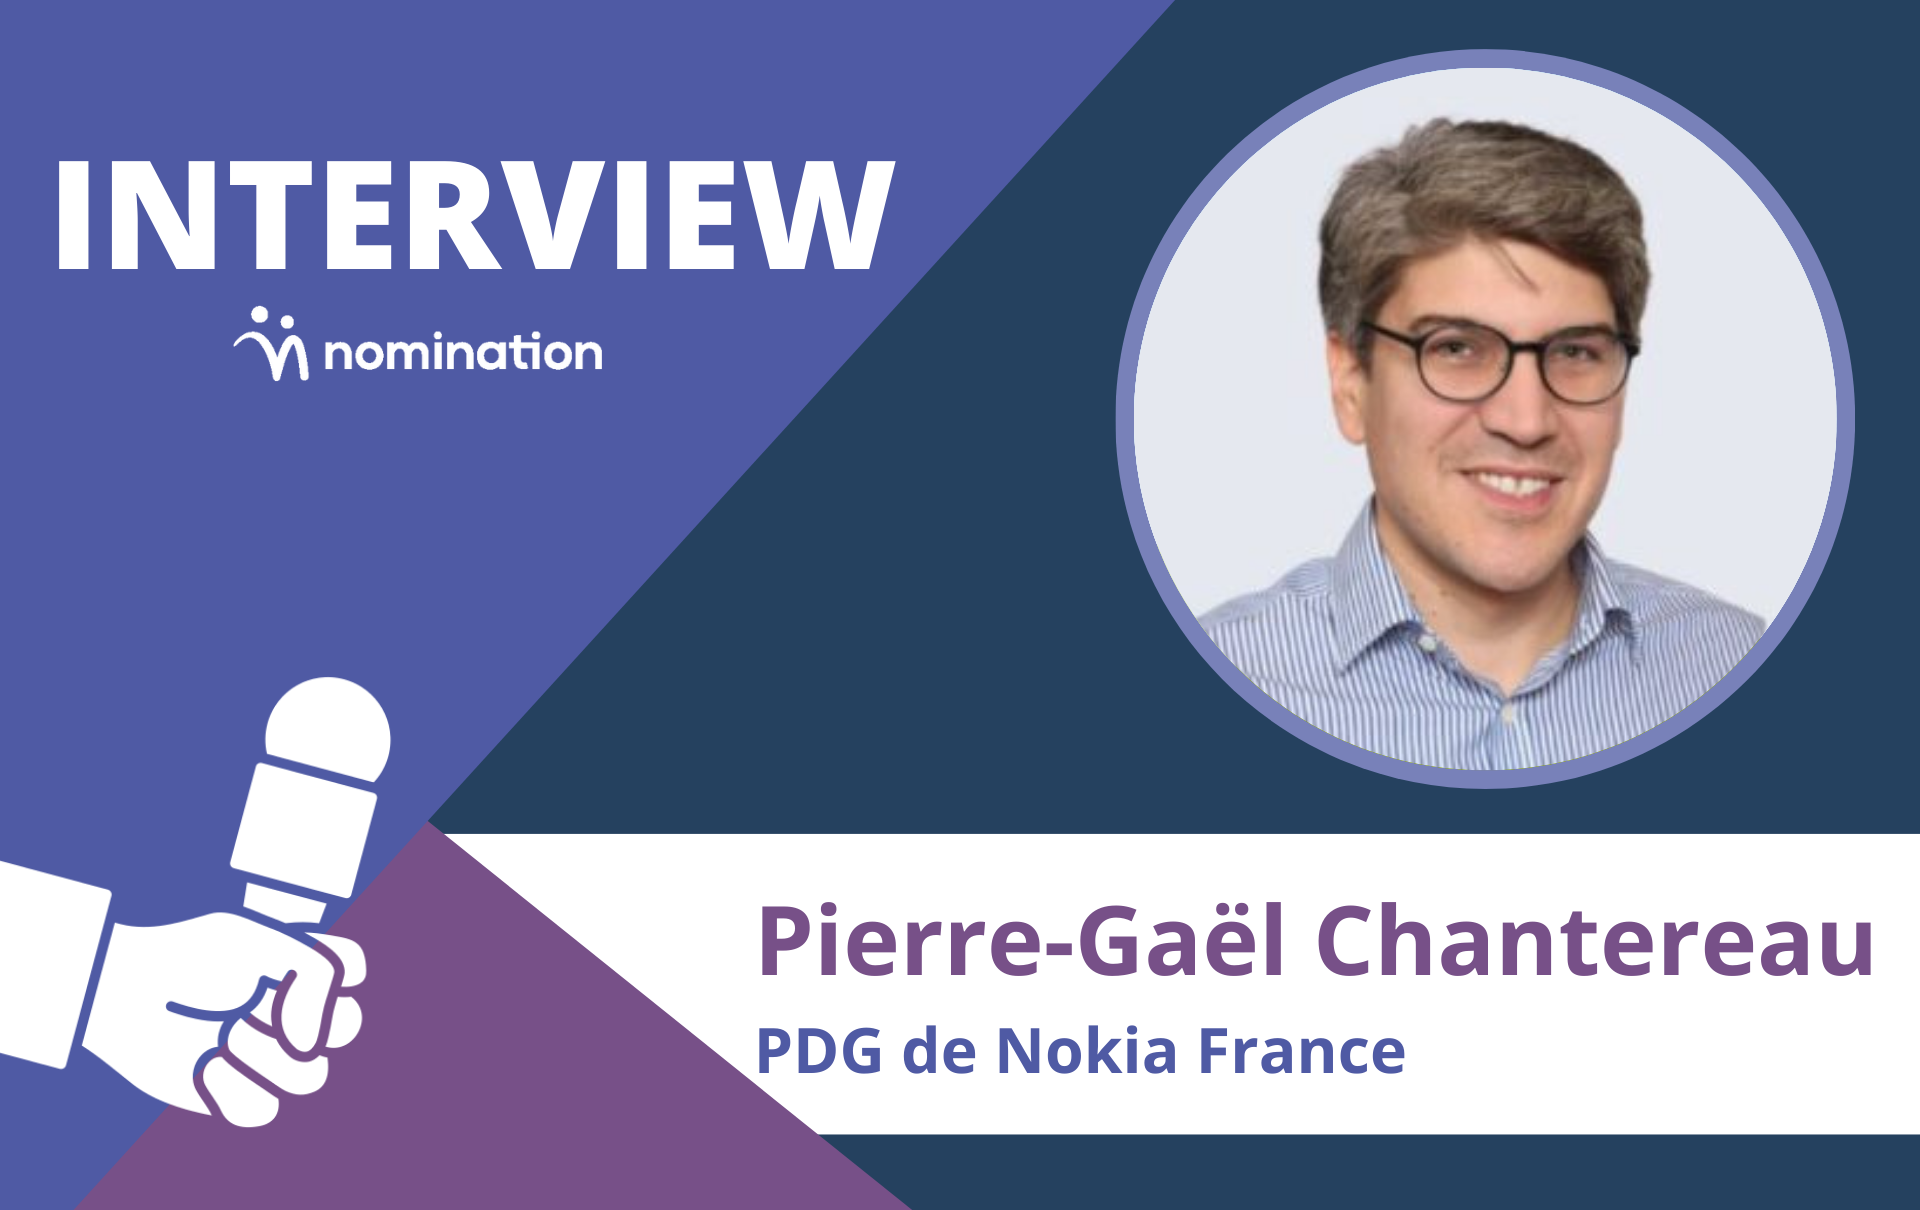 Pierre-Gaël Chantereau, PDG de Nokia France